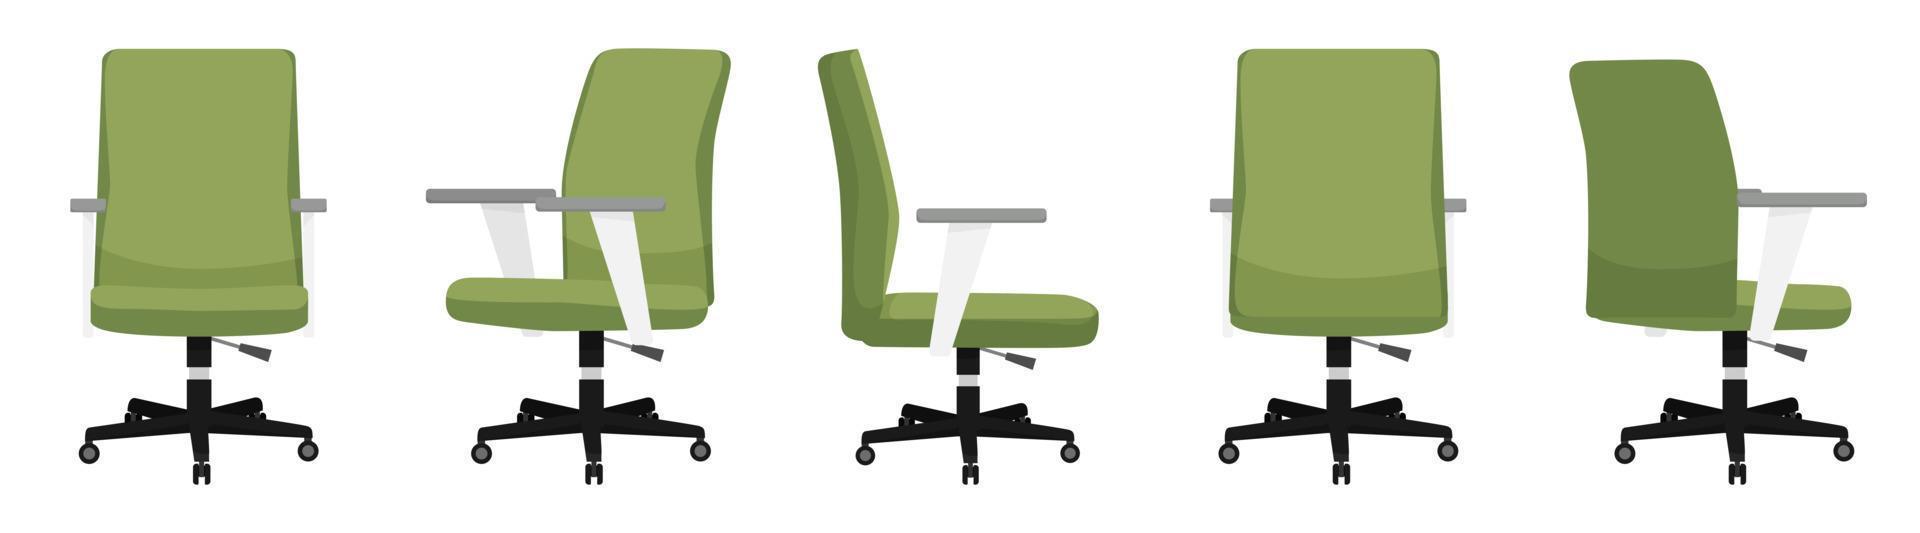 joli fauteuil de bureau moderne et beau avec différentes poses et positions vecteur